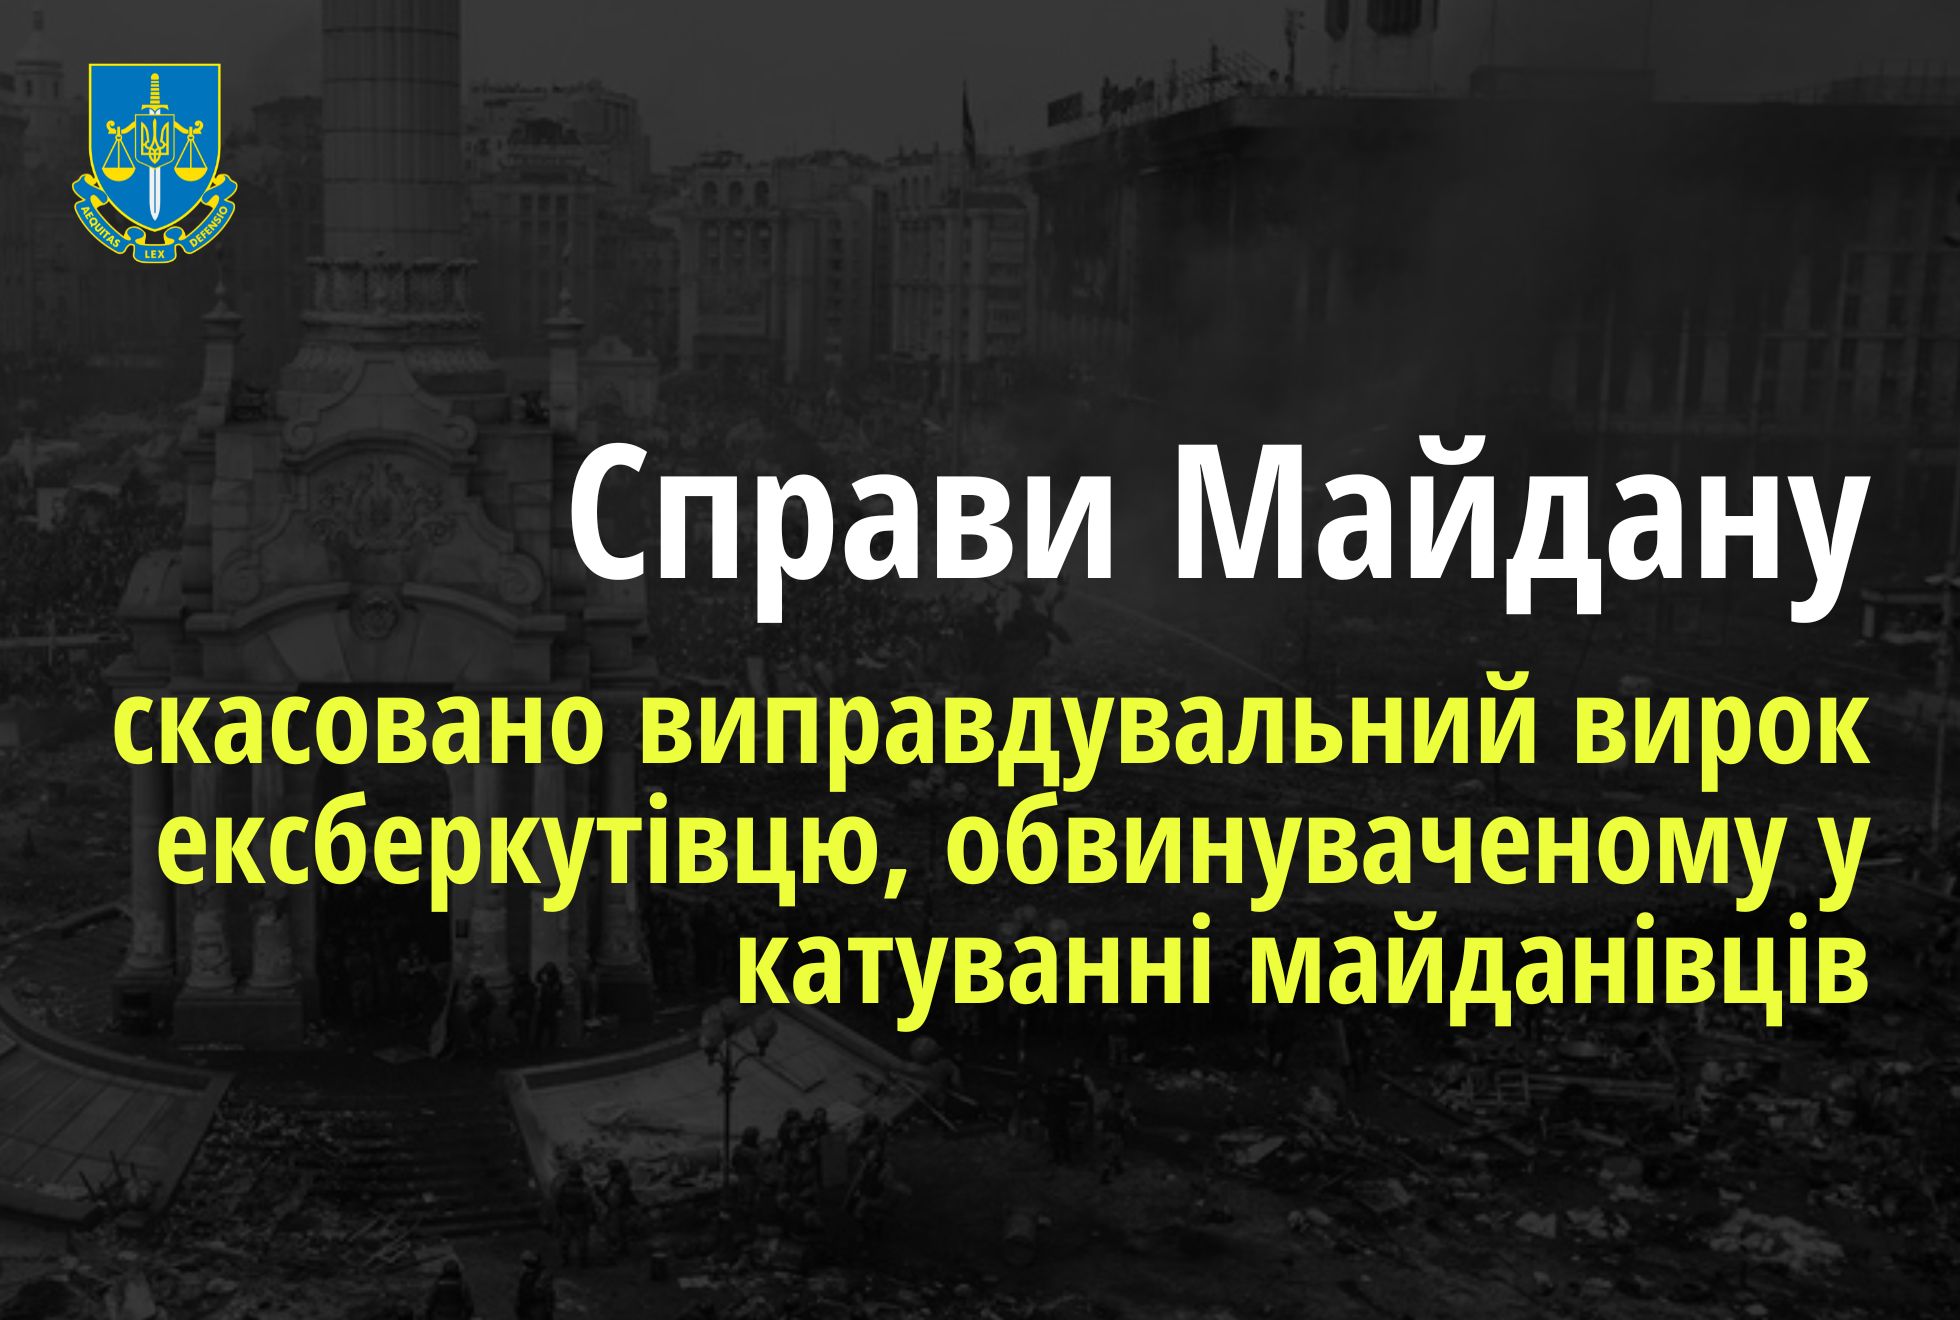 Справи Майдану: Верховний Суд скасував виправдувальний вирок ексберкутівцю, обвинуваченому у катуванні майданівців